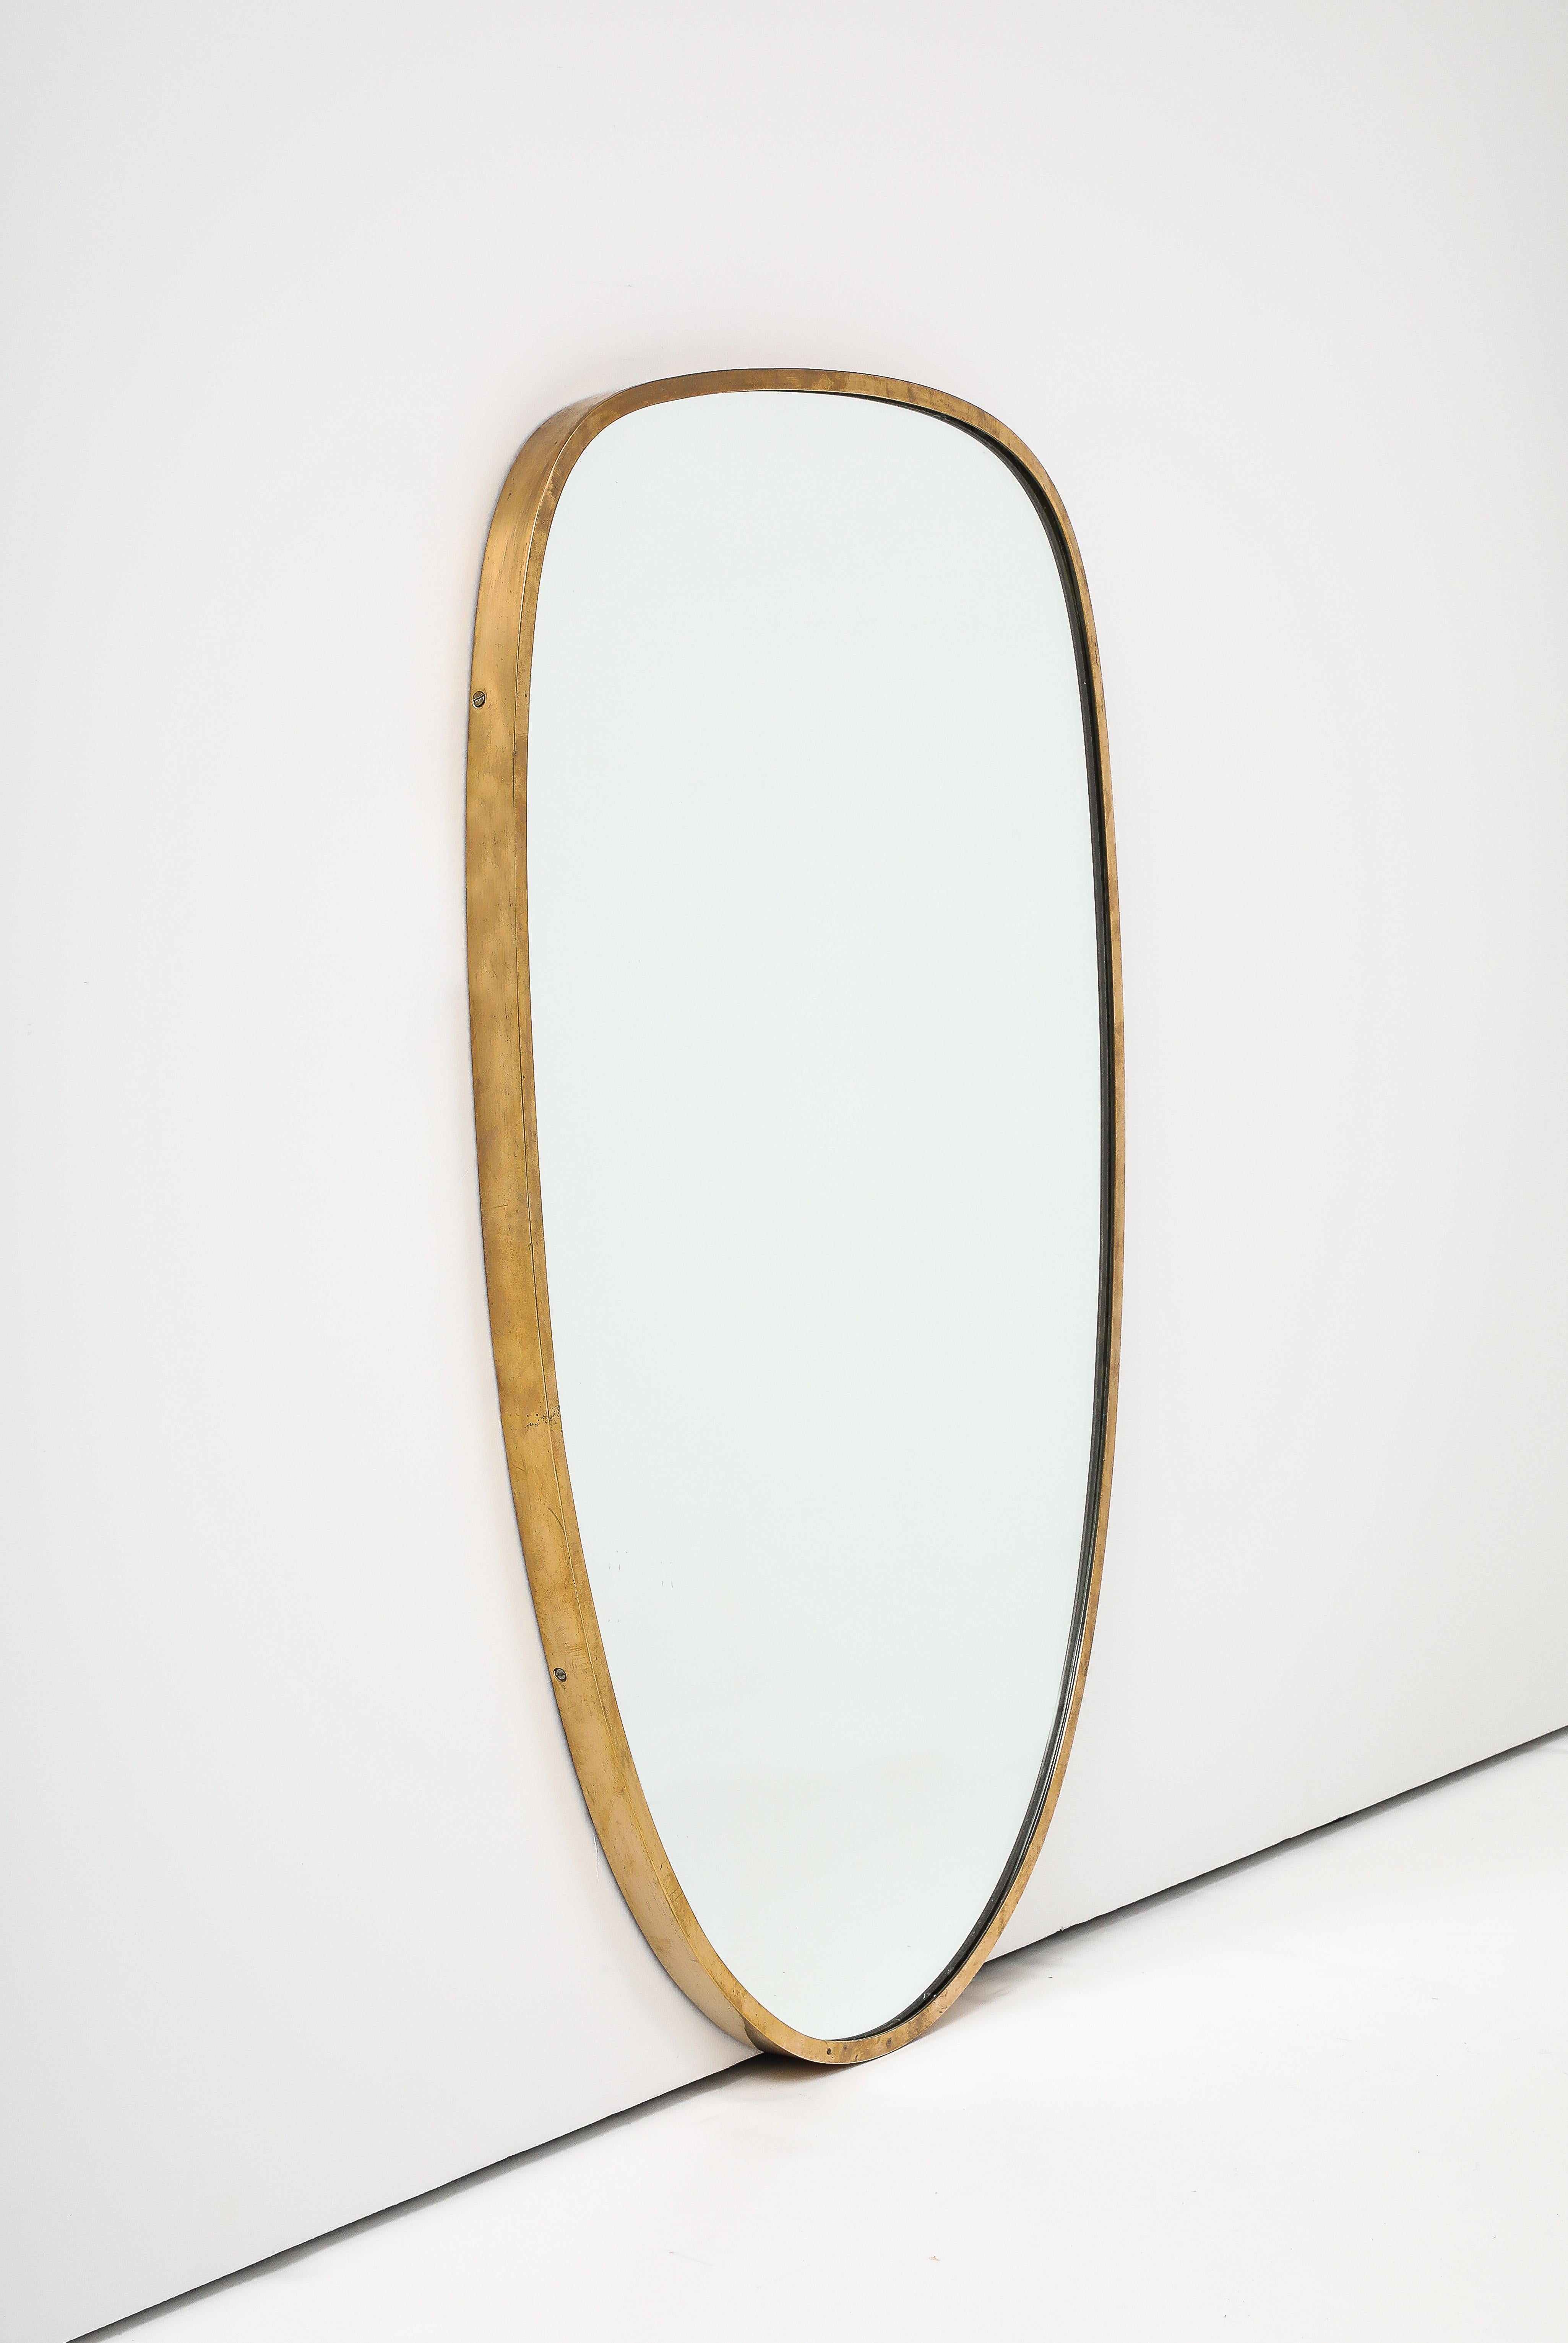 Miroir moderniste italien avec cadre en laiton, Italie, vers 1950
Laiton, verre
H : 30 D : 1 L : 19 po.

Forme inhabituelle non trouvée